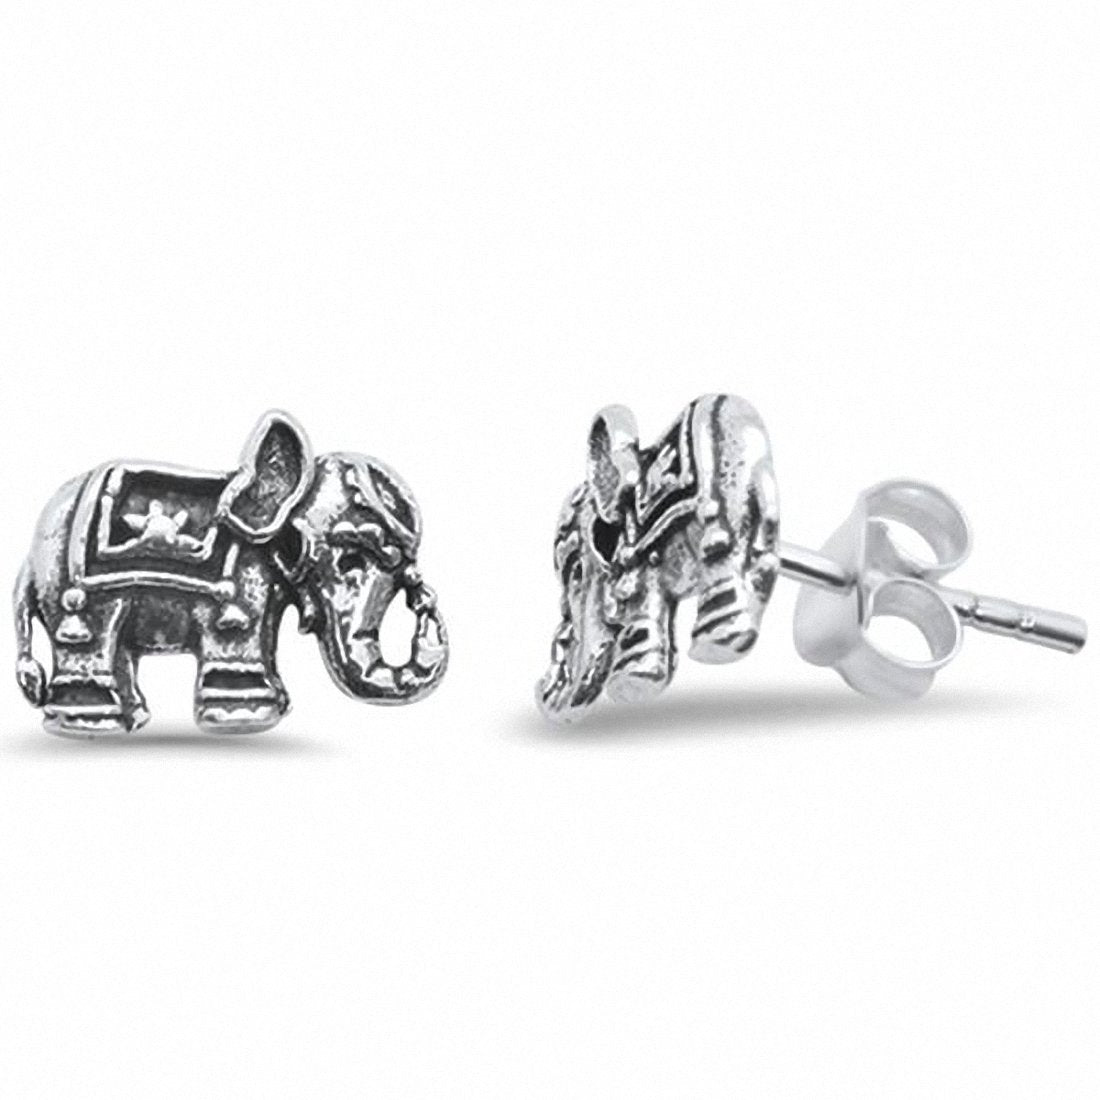 Bali Elephant Stud Earrings Solid 925 Sterling Silver